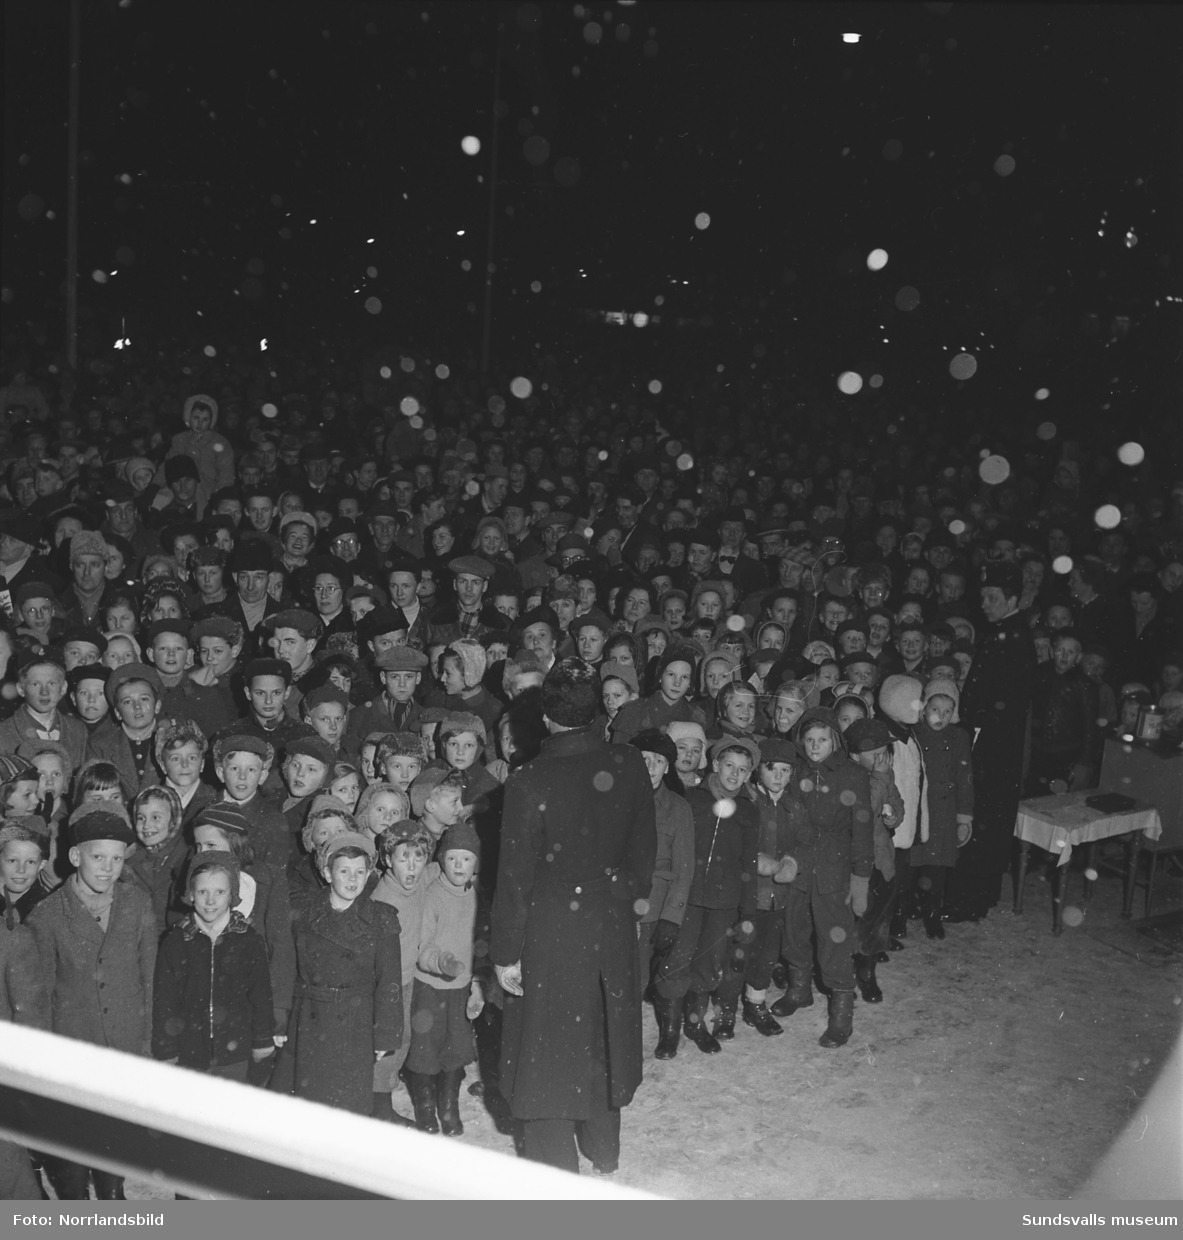 Högtidlig invigningsceremoni av Svenska skidspelens på Stora torget i Sundsvall. Snön faller och torget är fullpackat av folk.